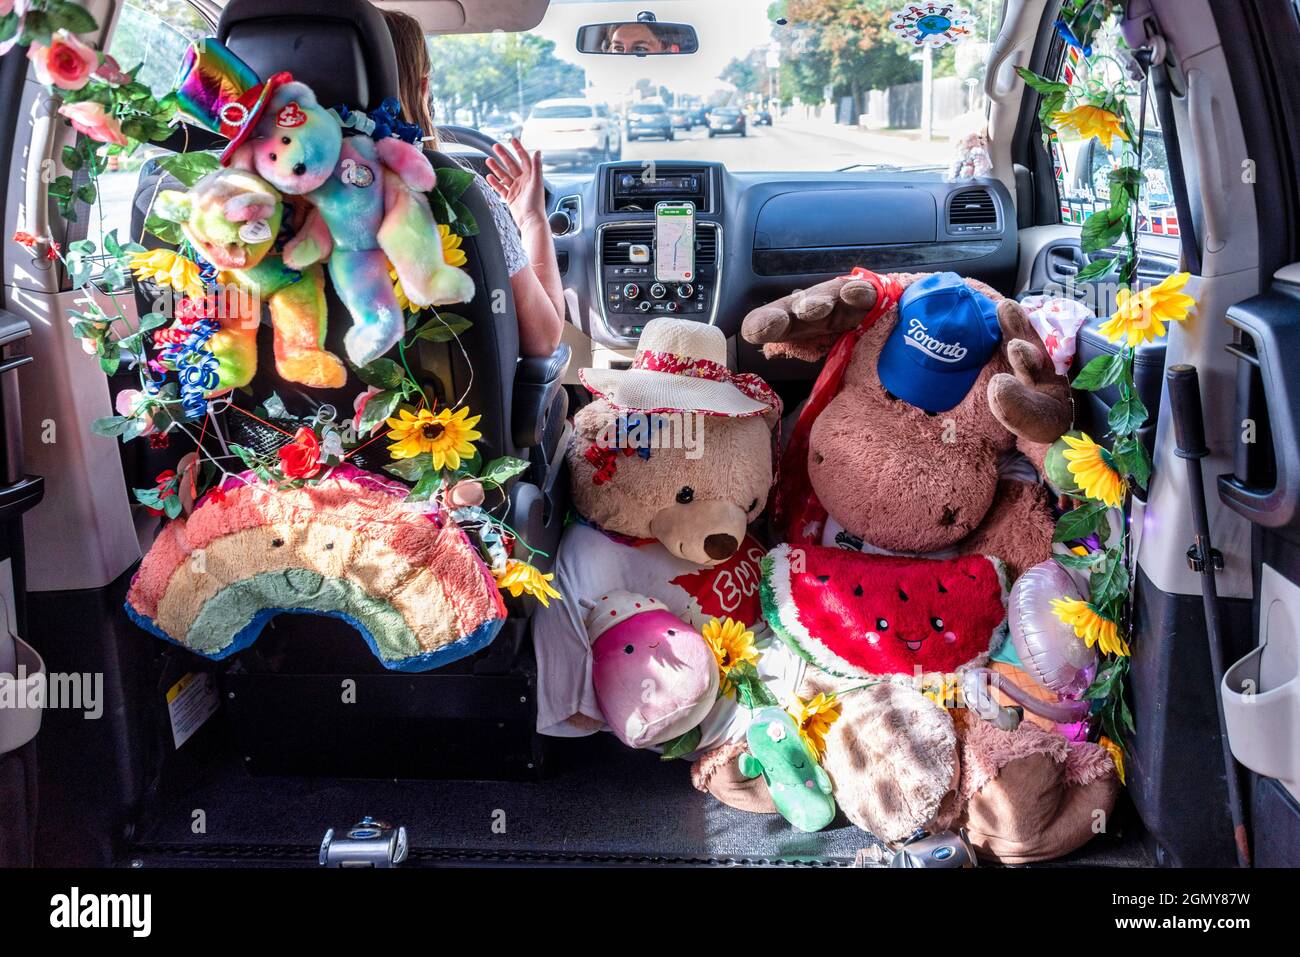 Una conductora Uber con su furgoneta accesible decorada con juguetes de peluche. Afirma haber recibido comentarios positivos de sus clientes. Foto de stock